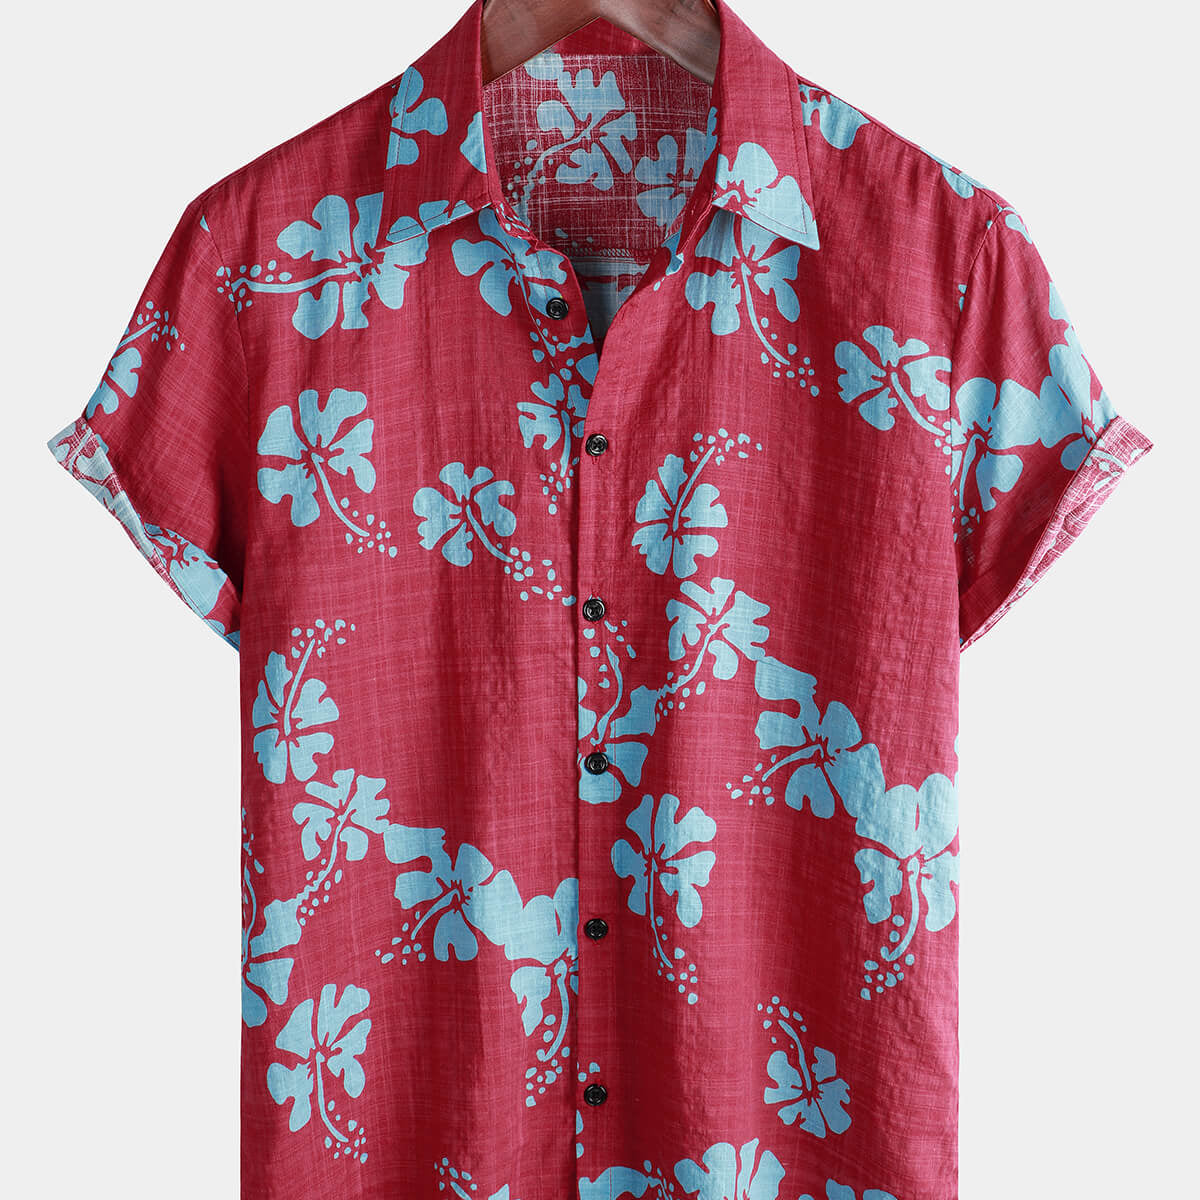 Men's Short Sleeve Red Floral Button Up Beach Tropical Hawaiian Shirt